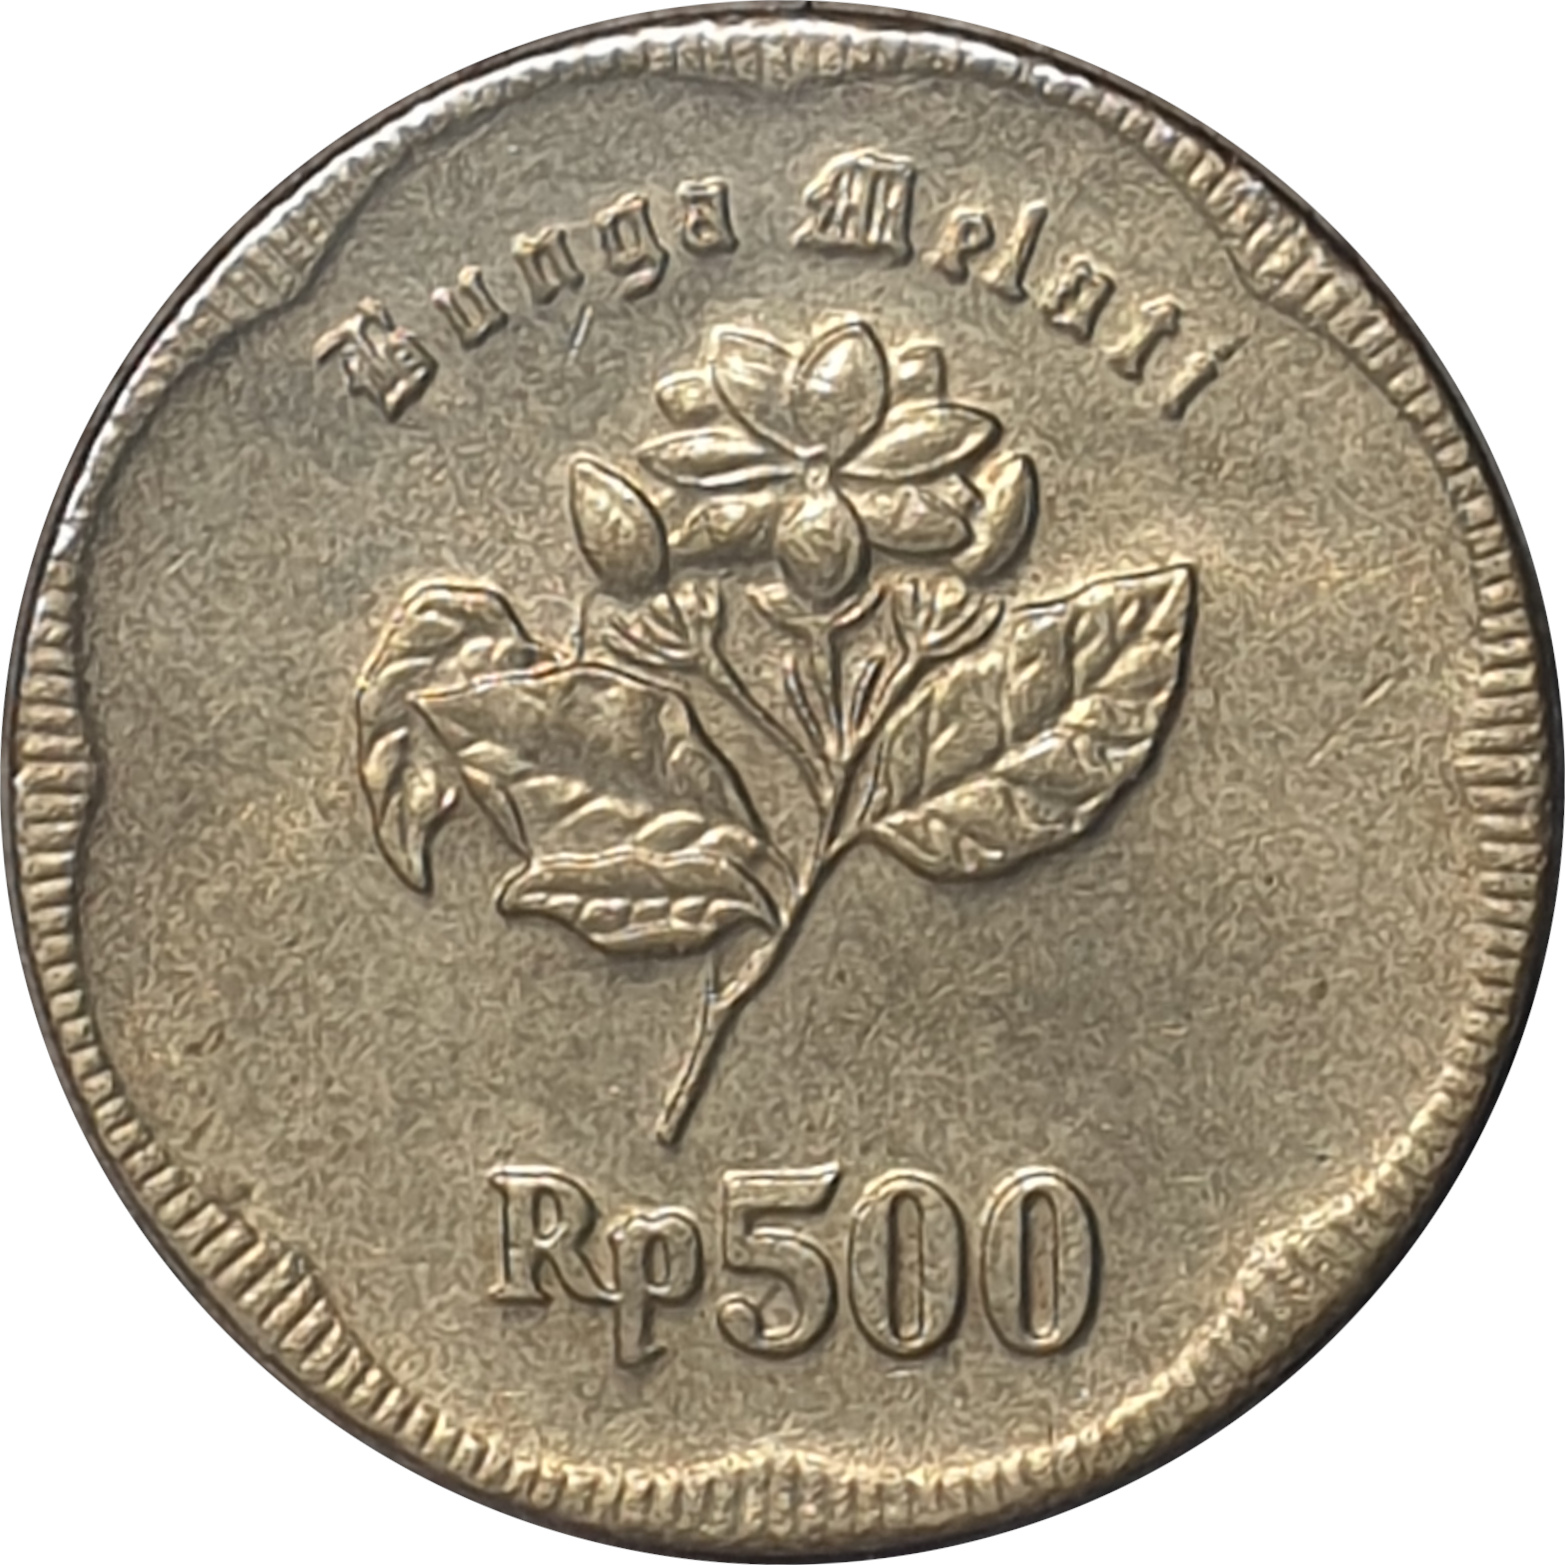 500 rupiah - Emblème - Rp500